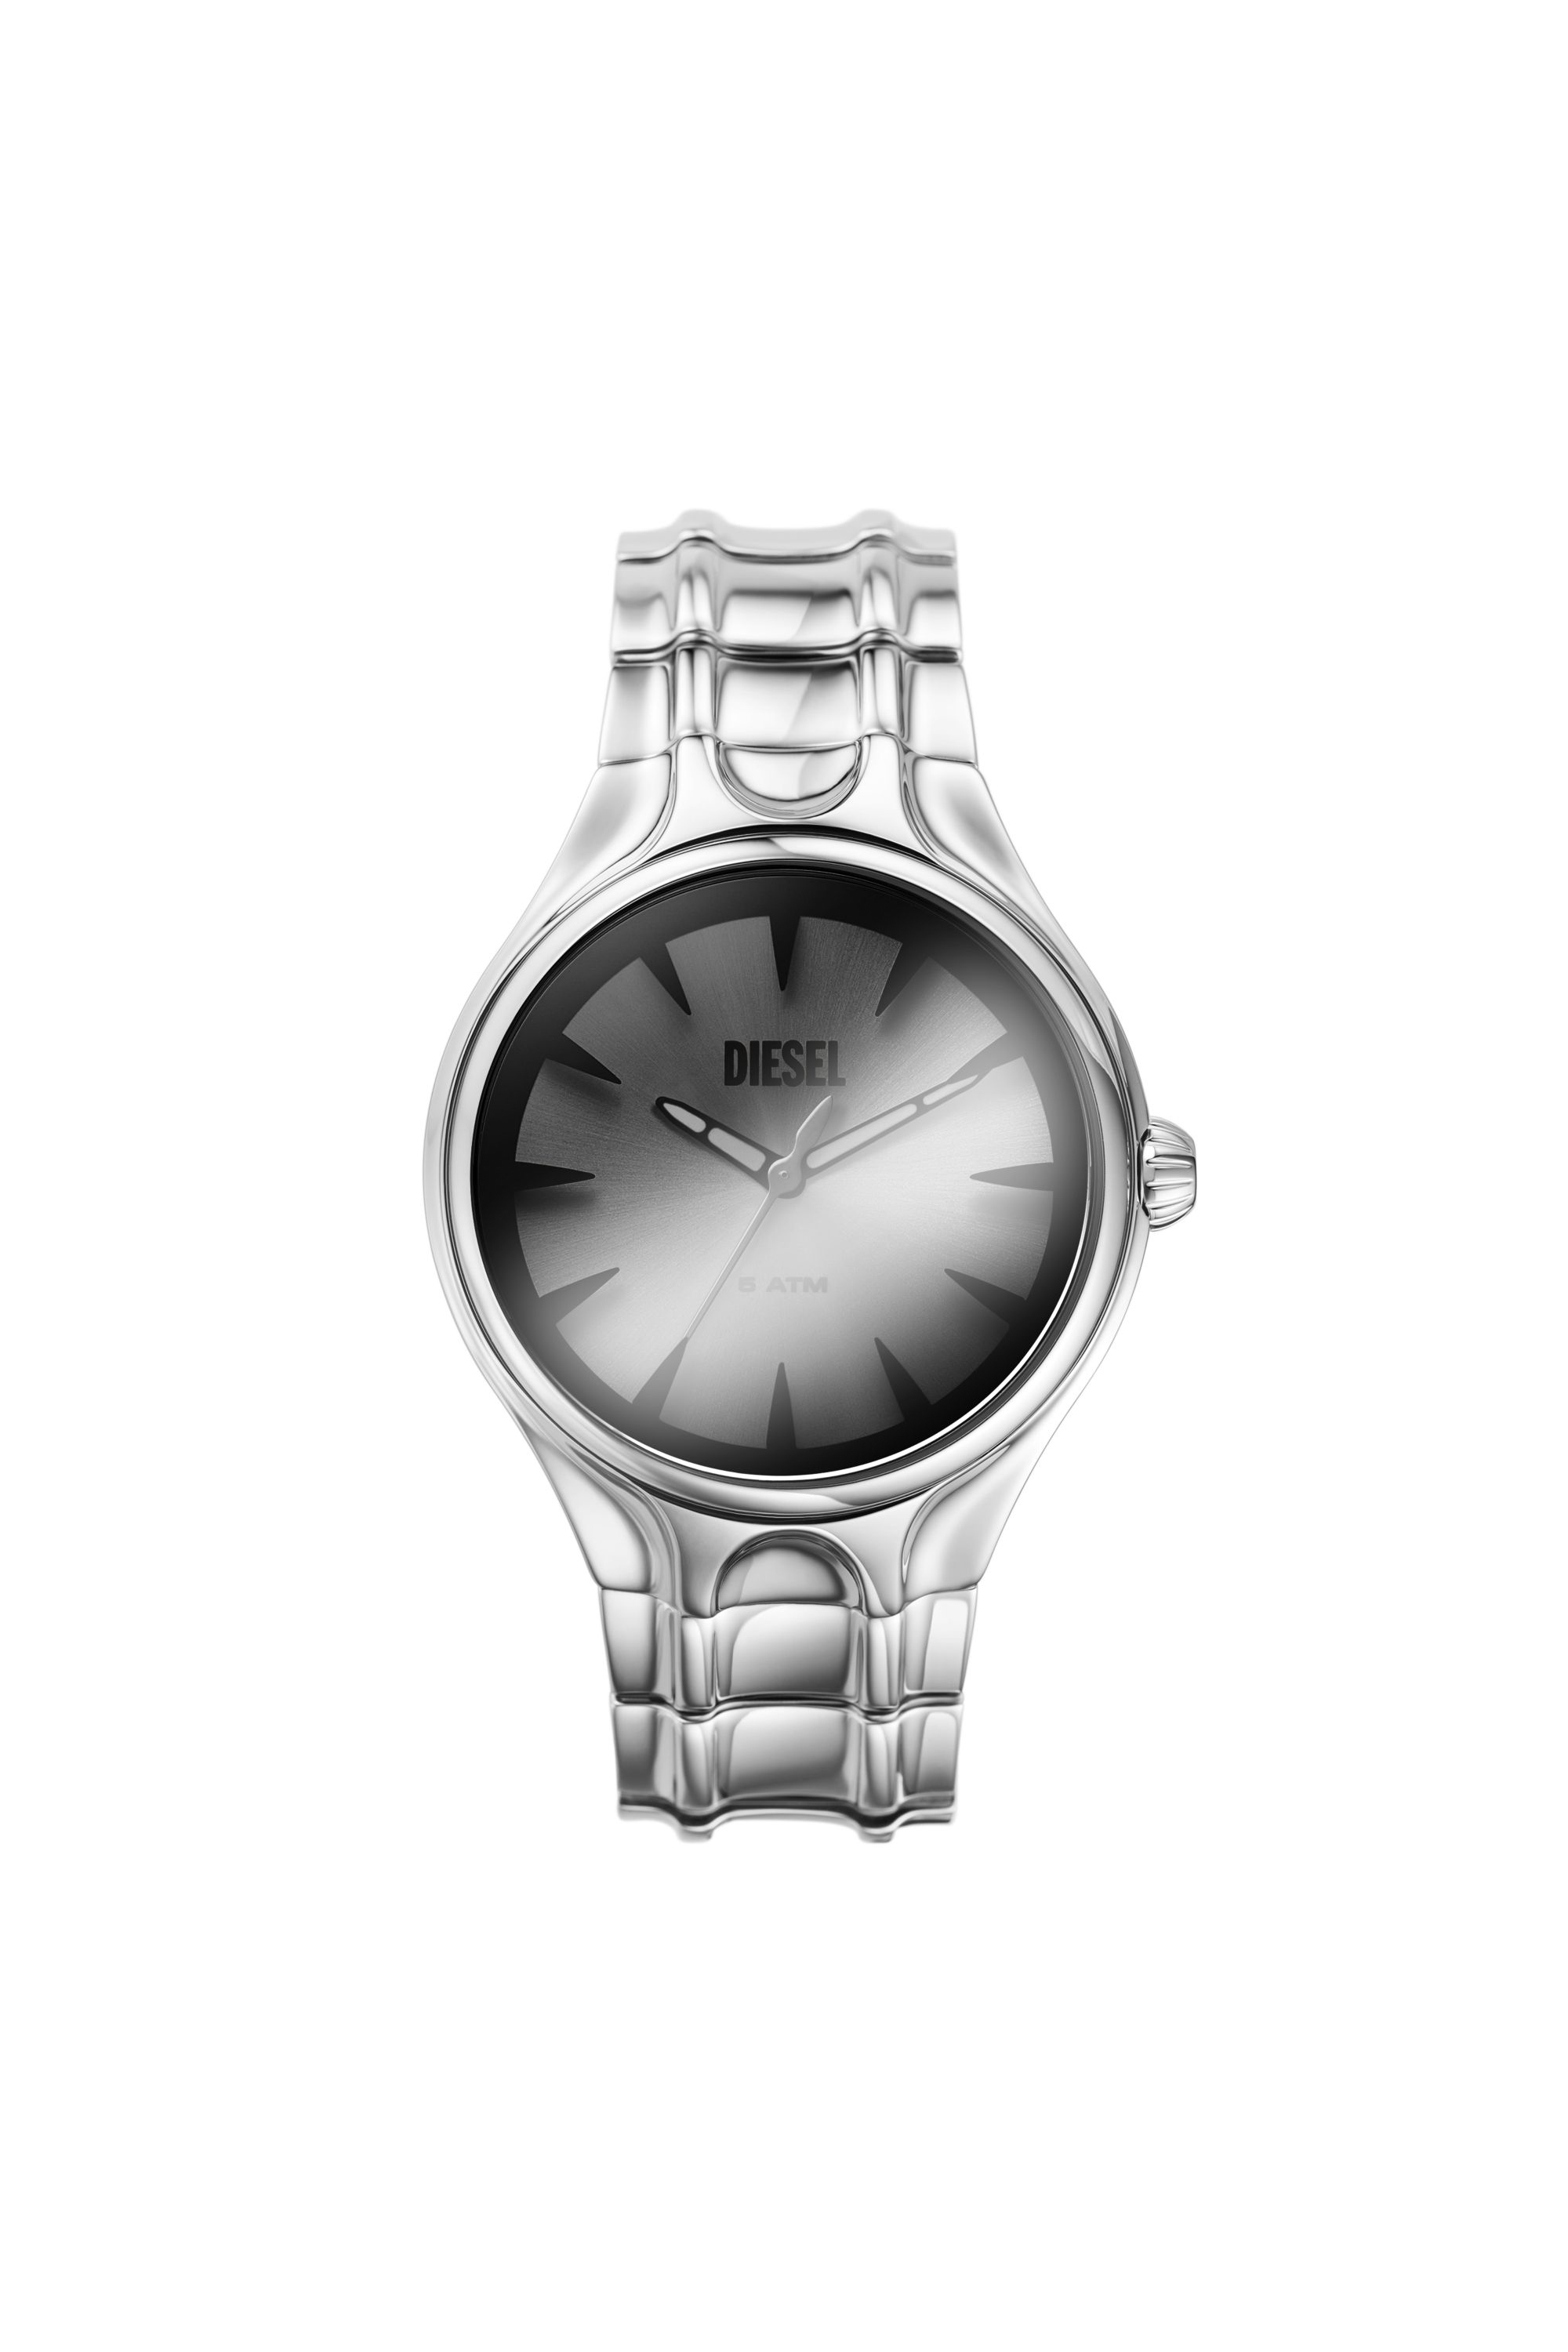 Diesel - DZ2205 WATCH, Male Streamline three-hand stainless steel watch in シルバー - Image 1